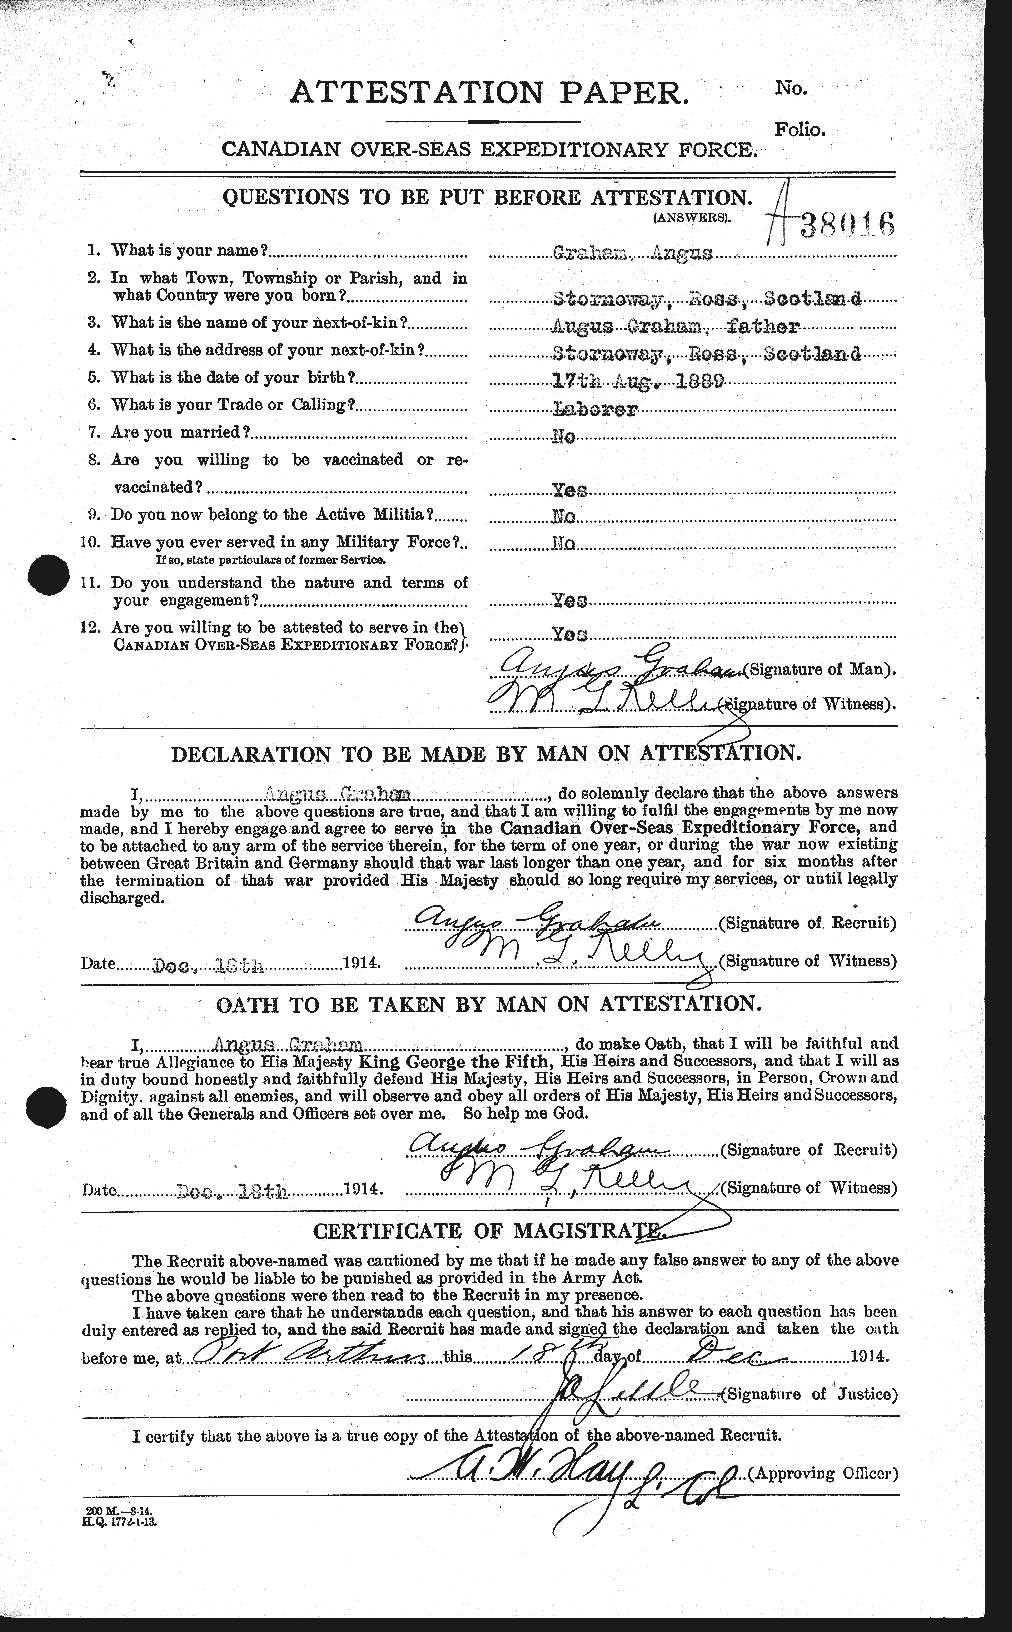 Dossiers du Personnel de la Première Guerre mondiale - CEC 359620a